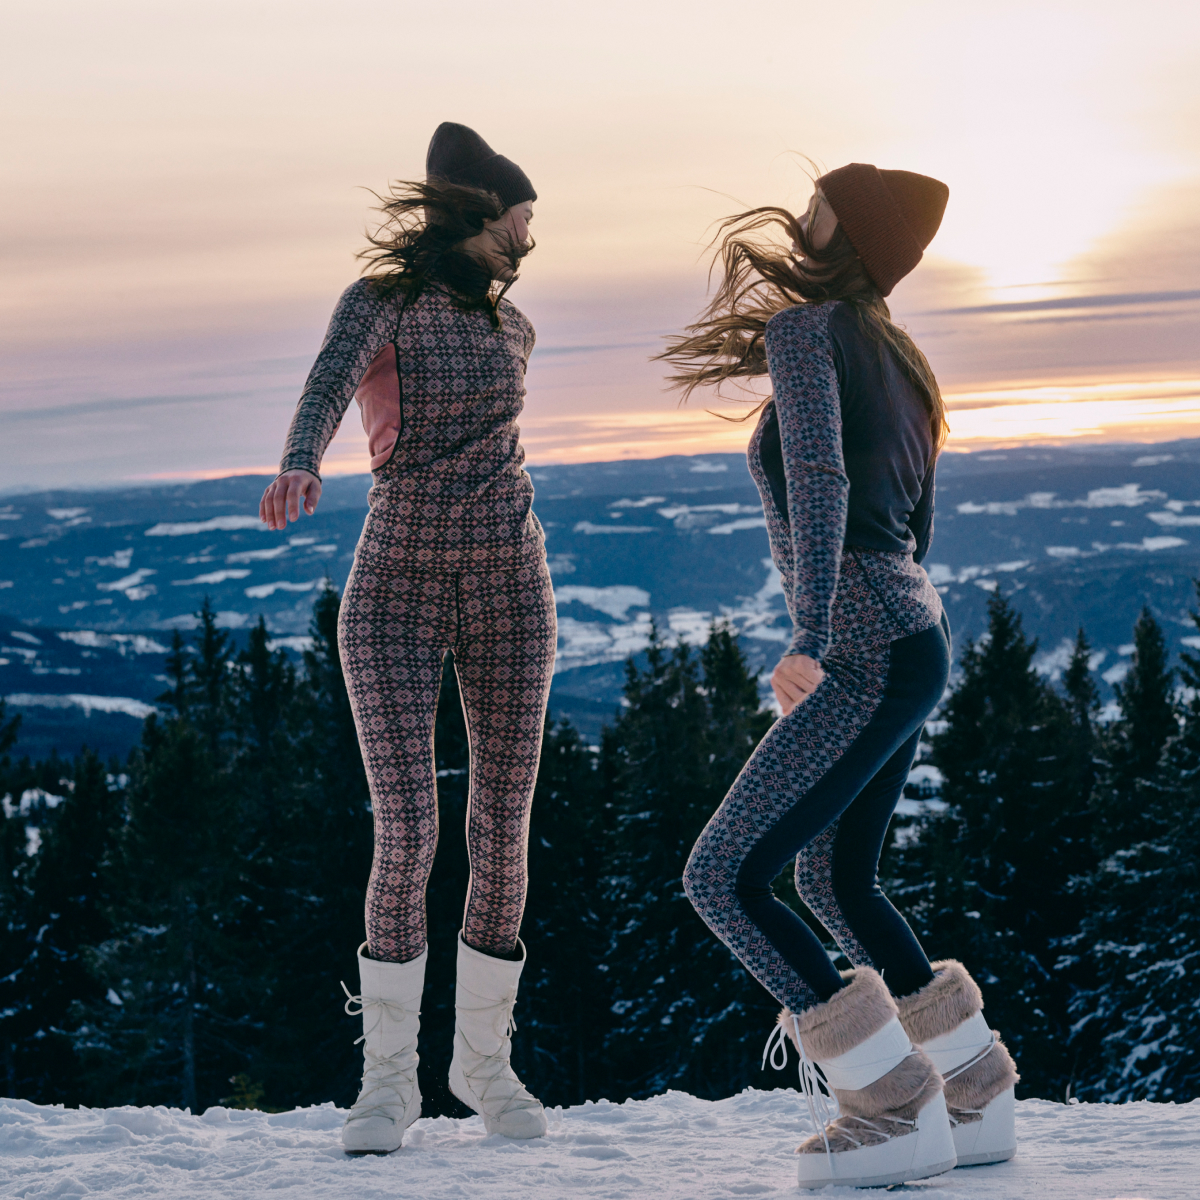 Două femei în lenjerie termoactivă de la marca Kari Traa